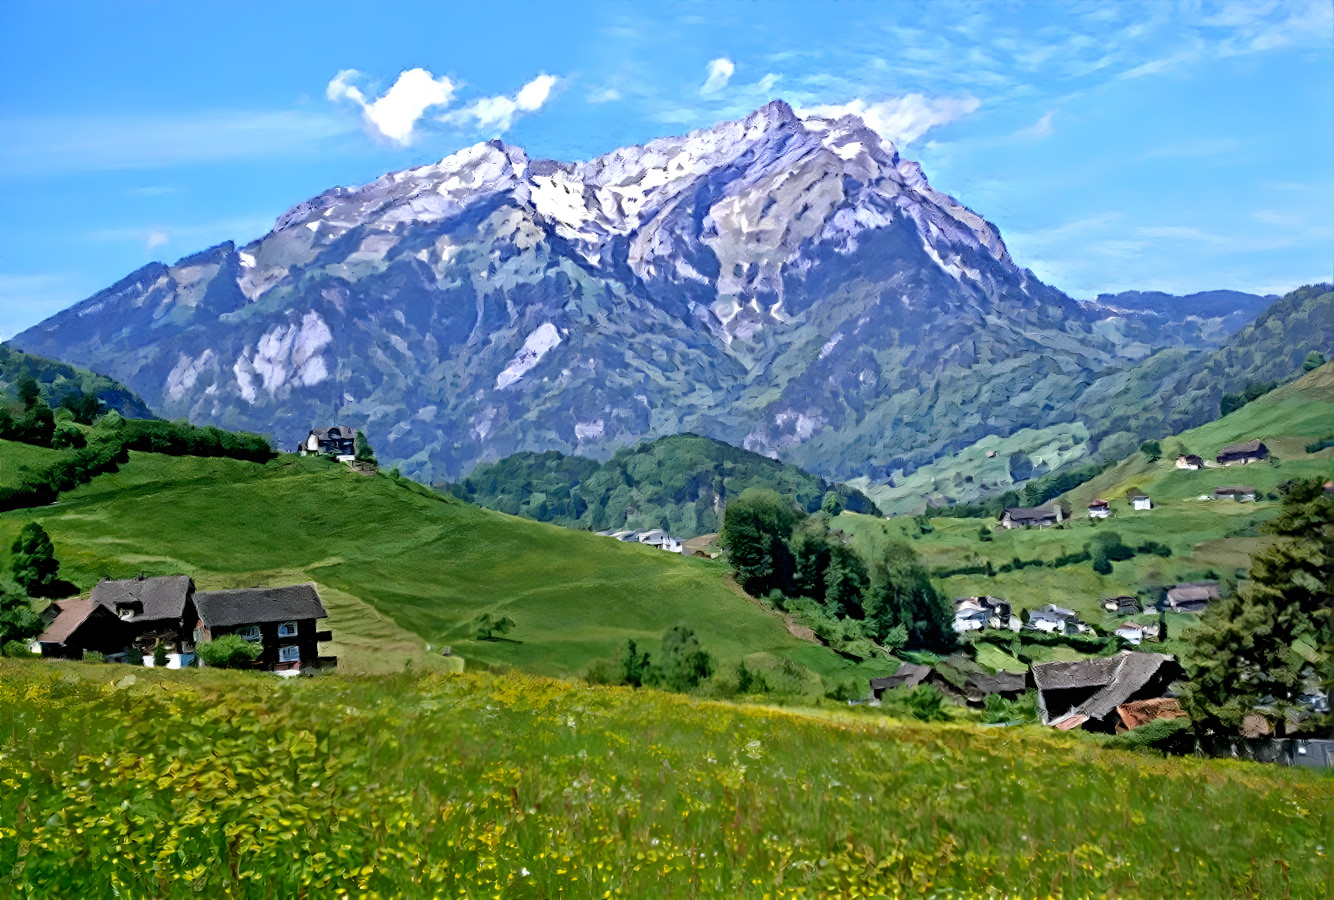 "The Bavarian Alps"